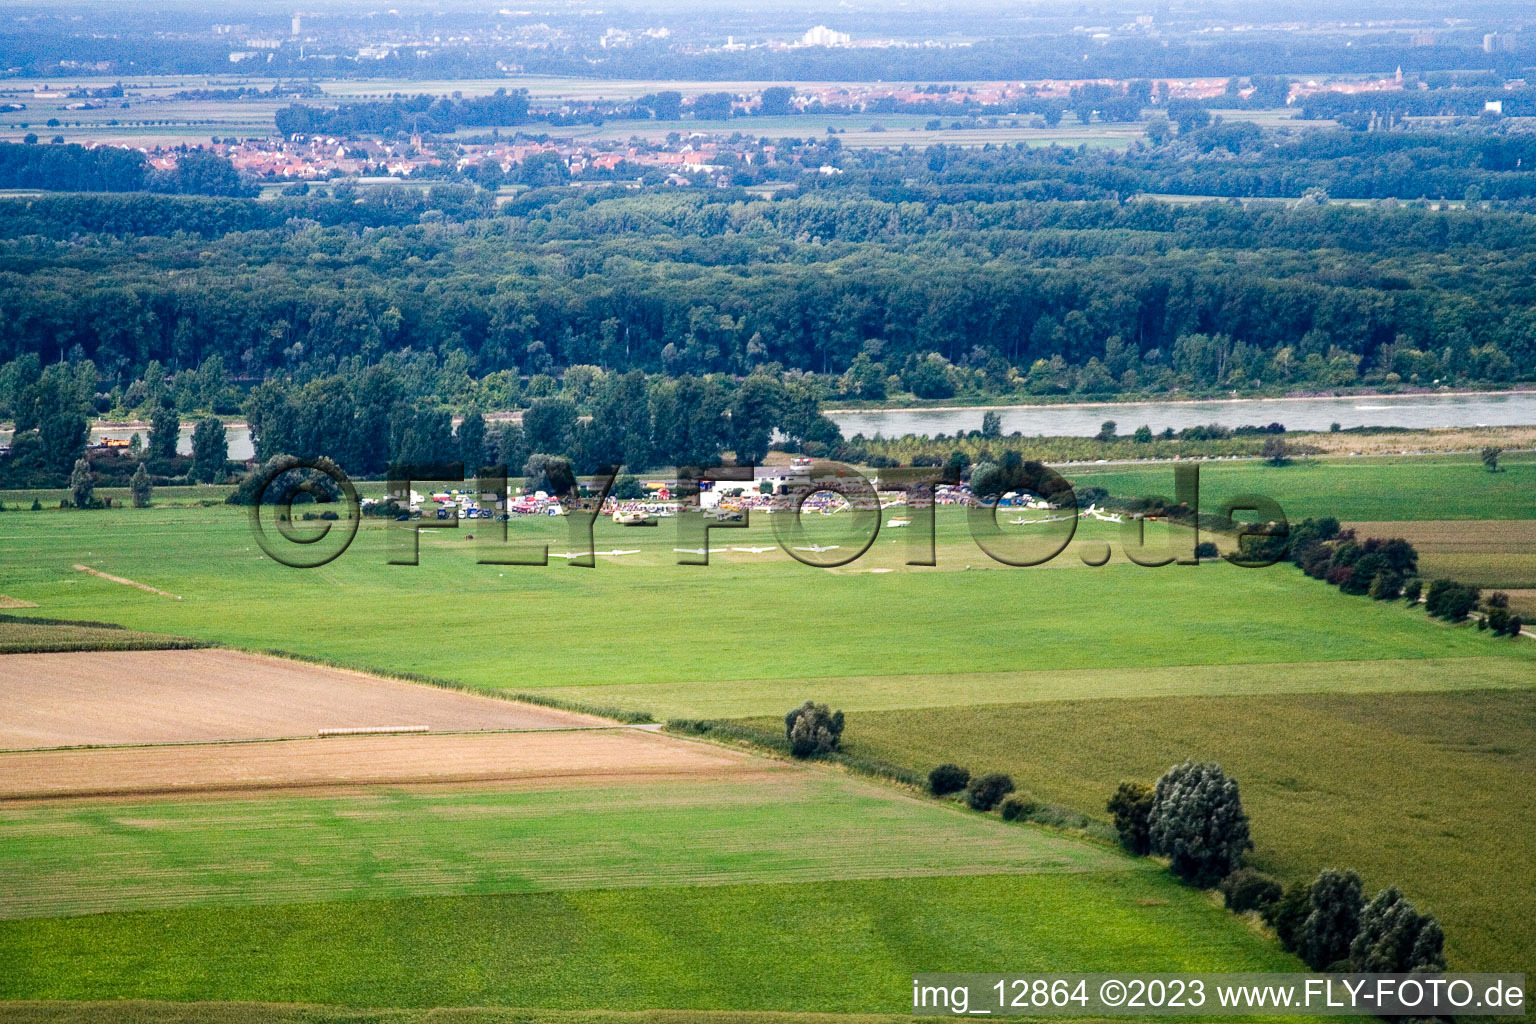 Luftbild von Ketsch, Flugplatzfest Herrenteich im Bundesland Baden-Württemberg, Deutschland